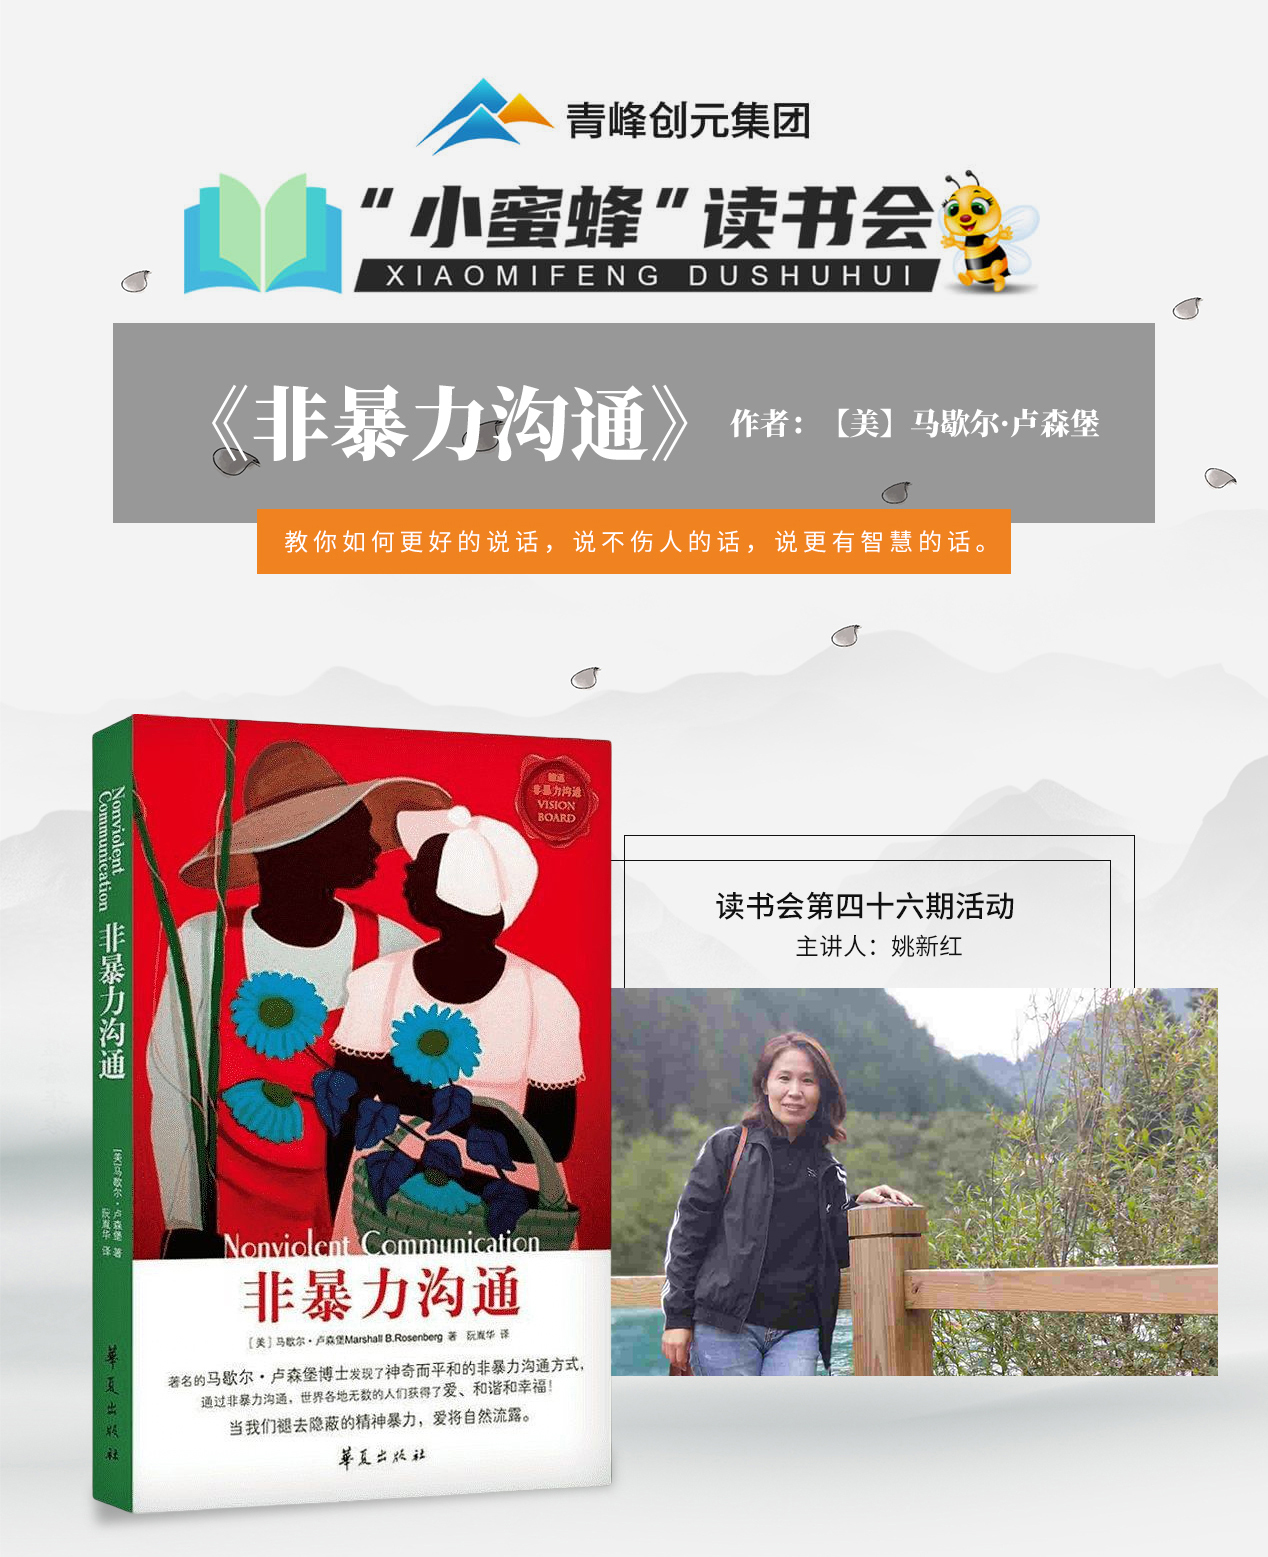 青峰创元集团“小蜜蜂”读书会第46期活动报道：《非暴力沟通》 姚新红